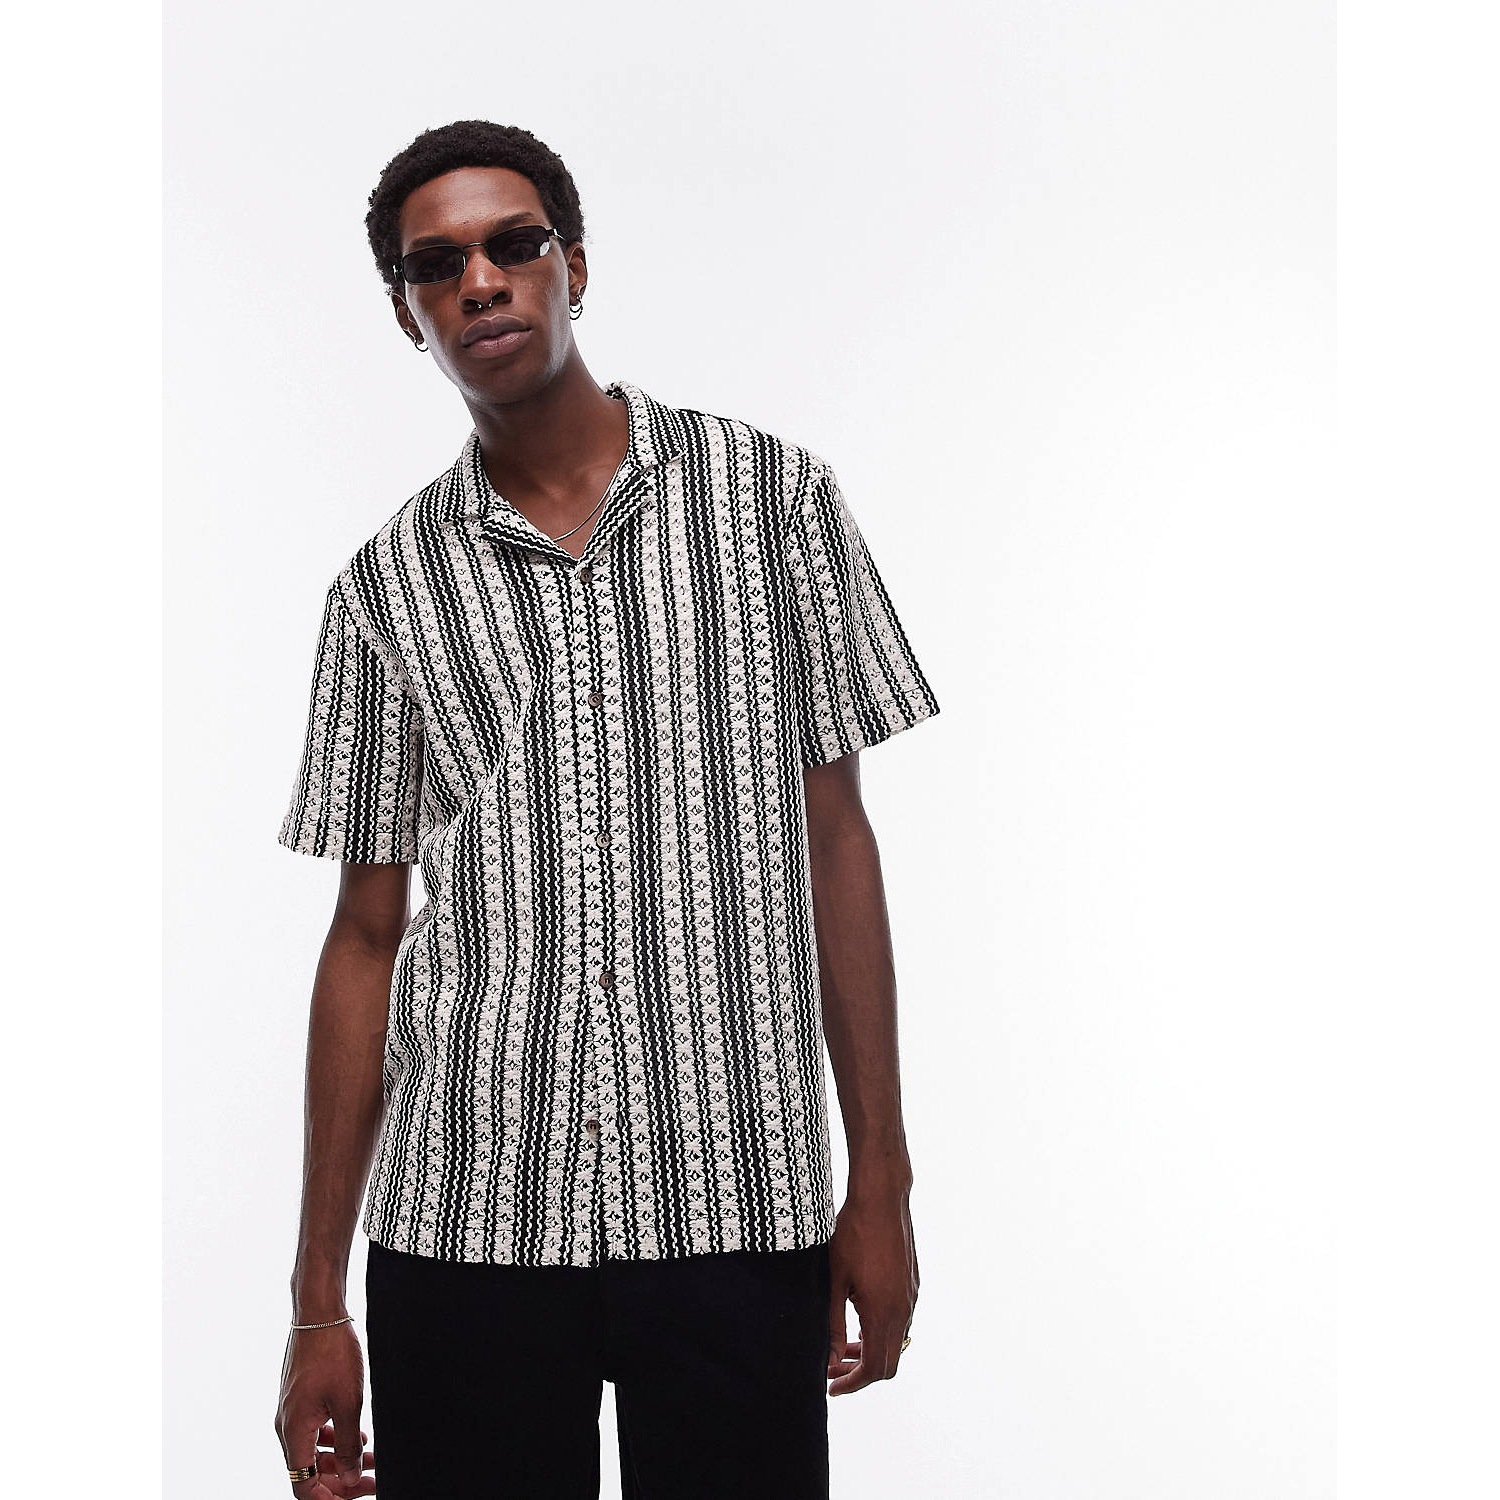 полосатая рубашка стандартного кроя из хлопковой пряжи Рубашка Topman Short Sleeve Relaxed Crochet Stripe, черный/белый